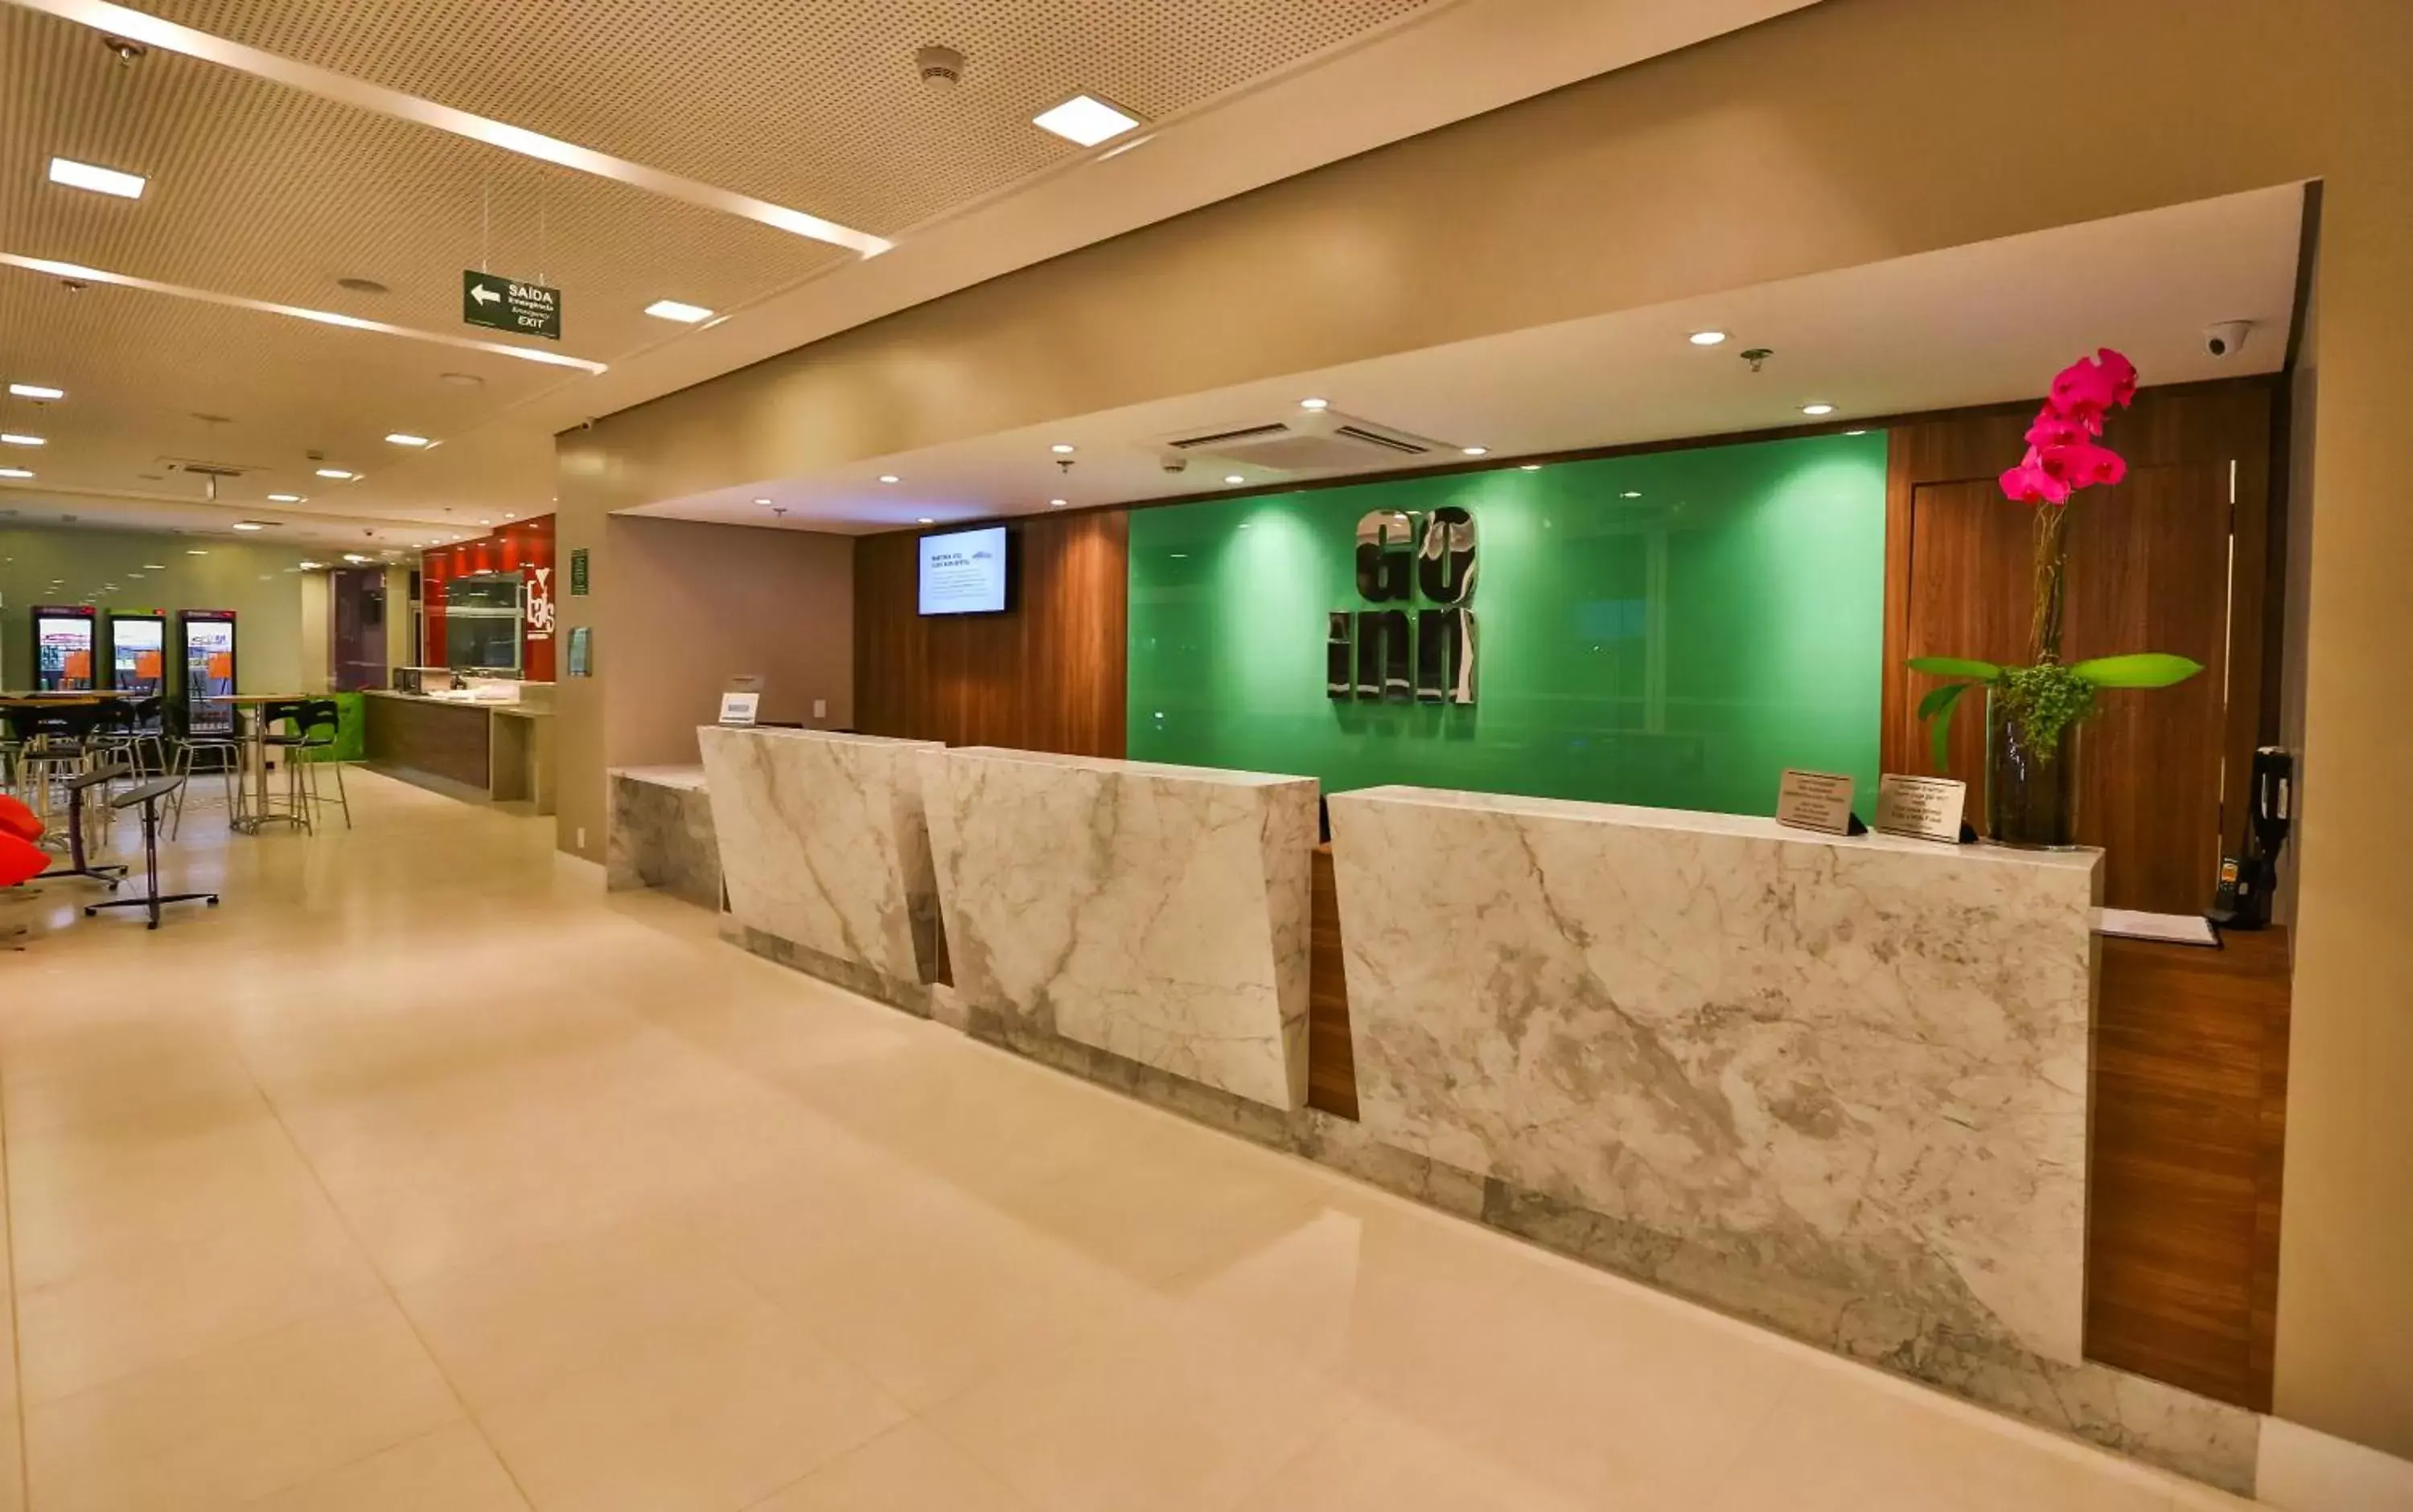 Lobby or reception in Go Inn Cambuí Campinas